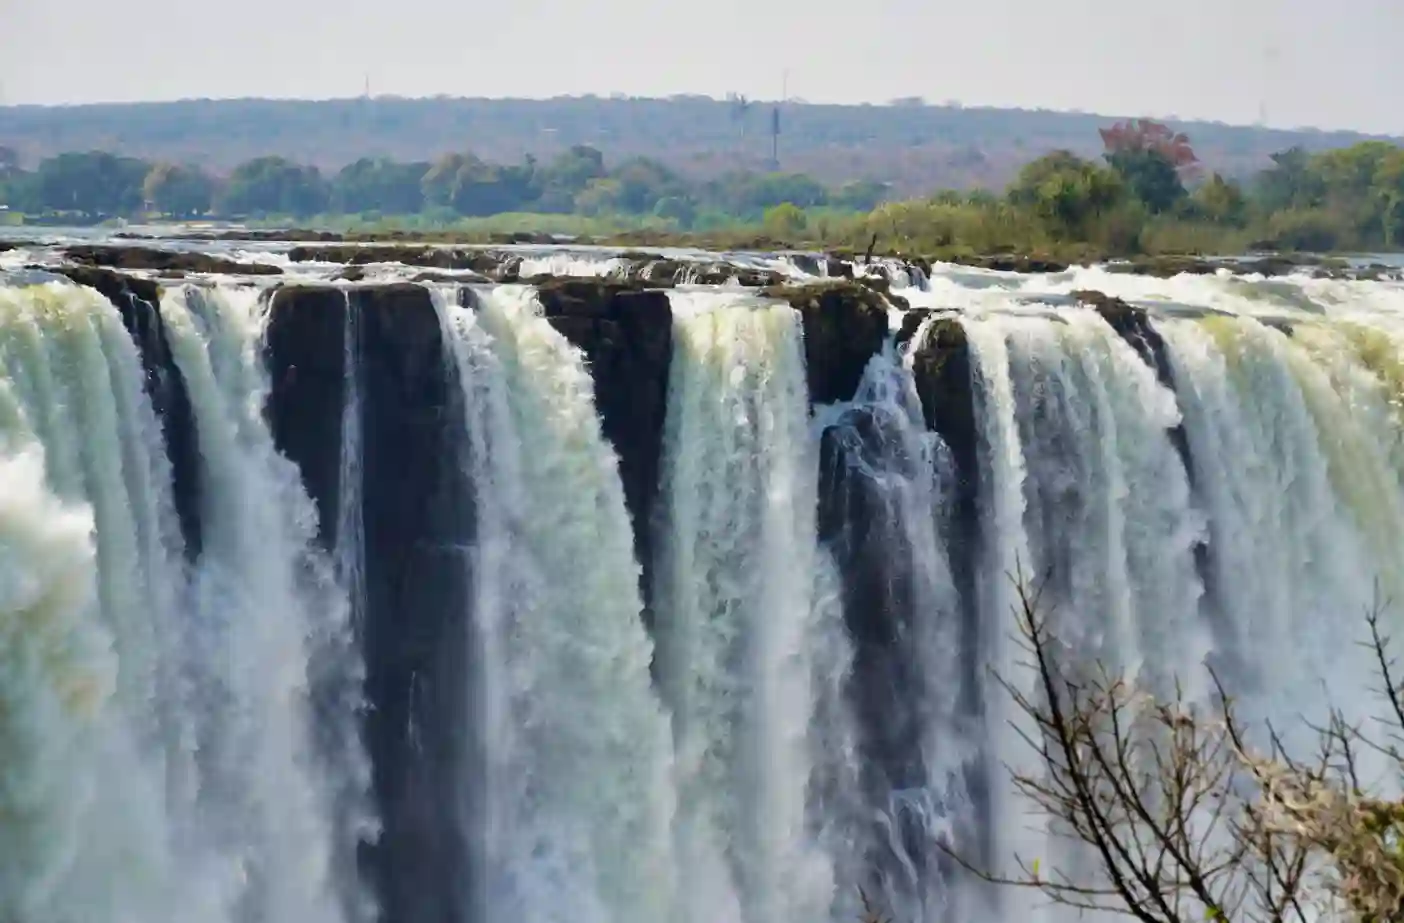 I:\AXUMIMAGES\Afrika\Zimbabwe\Vic Falls\Falls 2